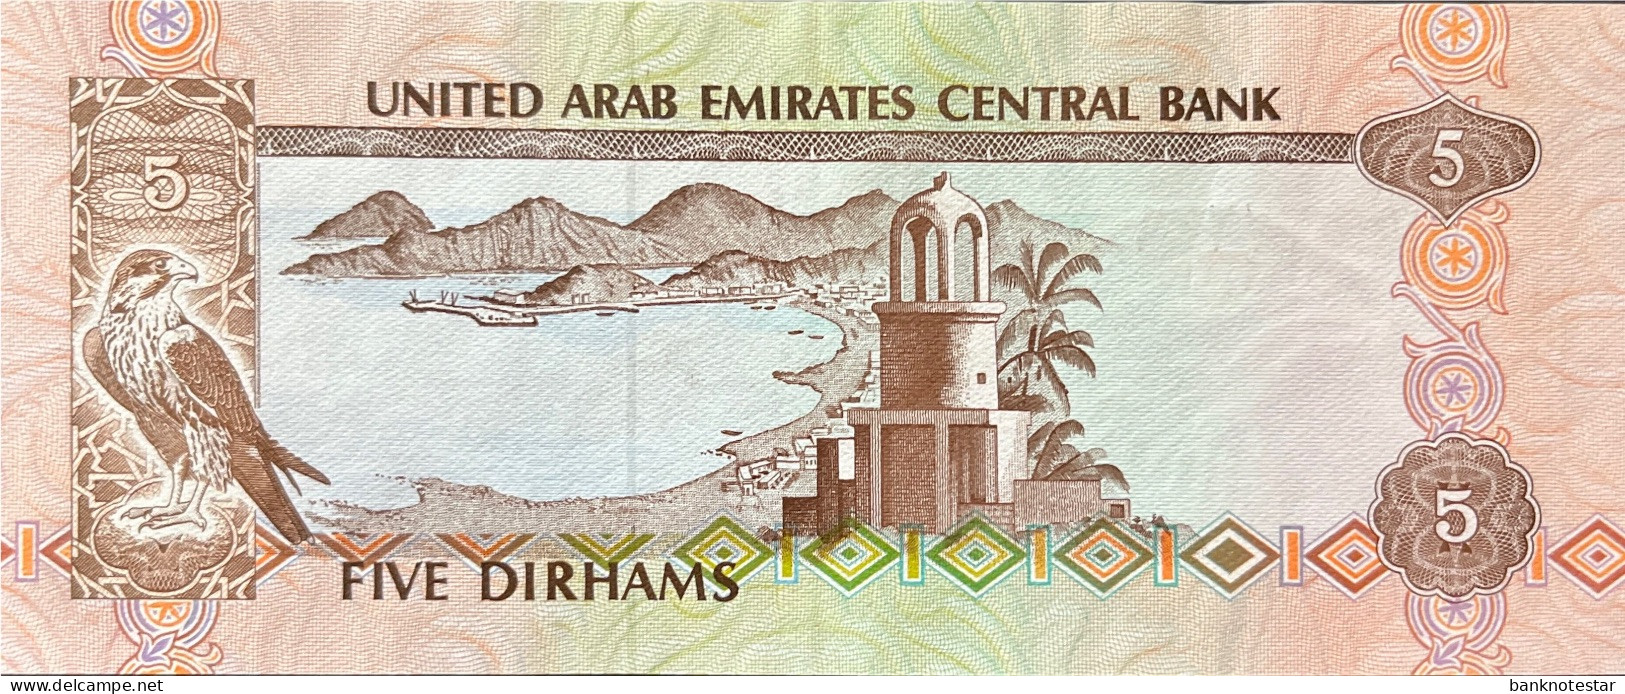 United Arab Emirates 5 Dirham, P-7 (1982) - Extremely Fine Plus - United Arab Emirates